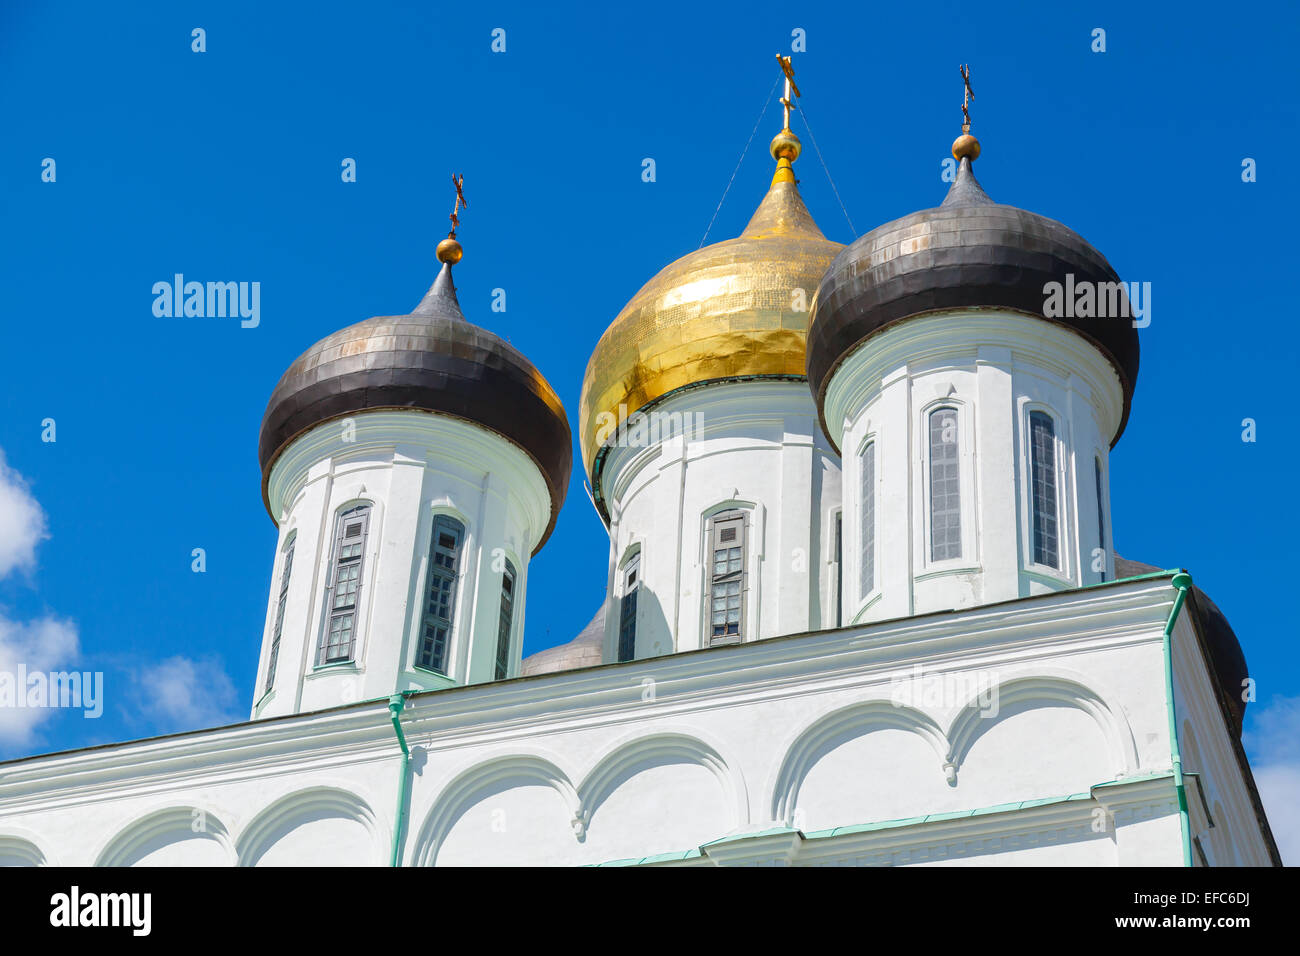 Classica russa antica architettura religiosa. La trinità cattedrale che sorge dal 1589 a Pskov il Cremlino. Chiesa Ortodossa Foto Stock